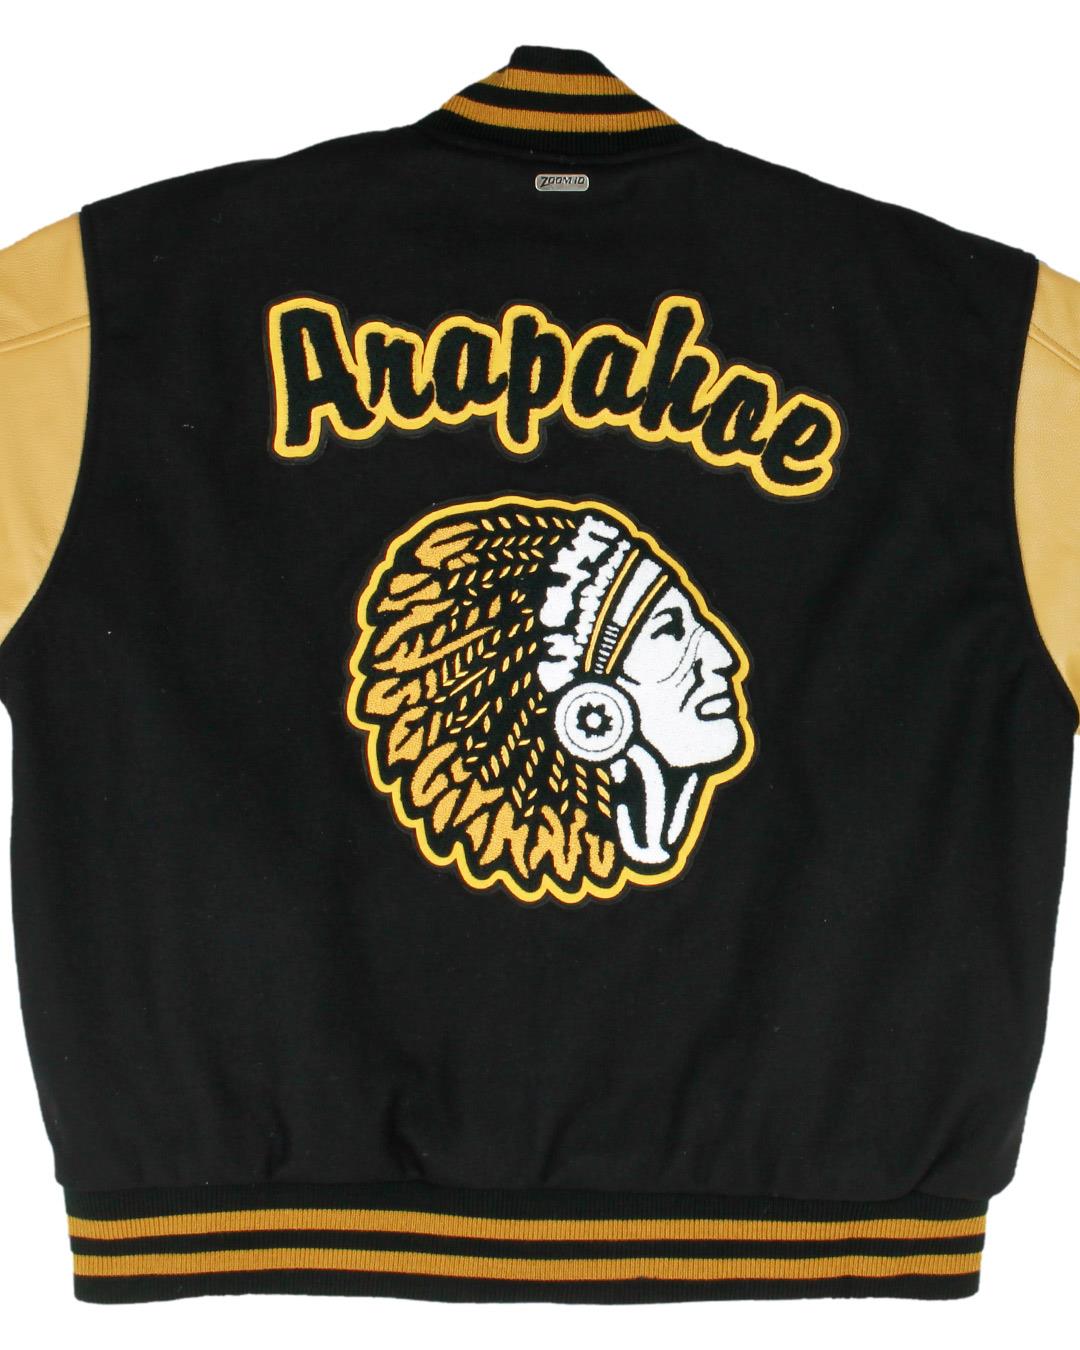 Arapahoe High School Letterman Jacket, Centennial, CO - Back